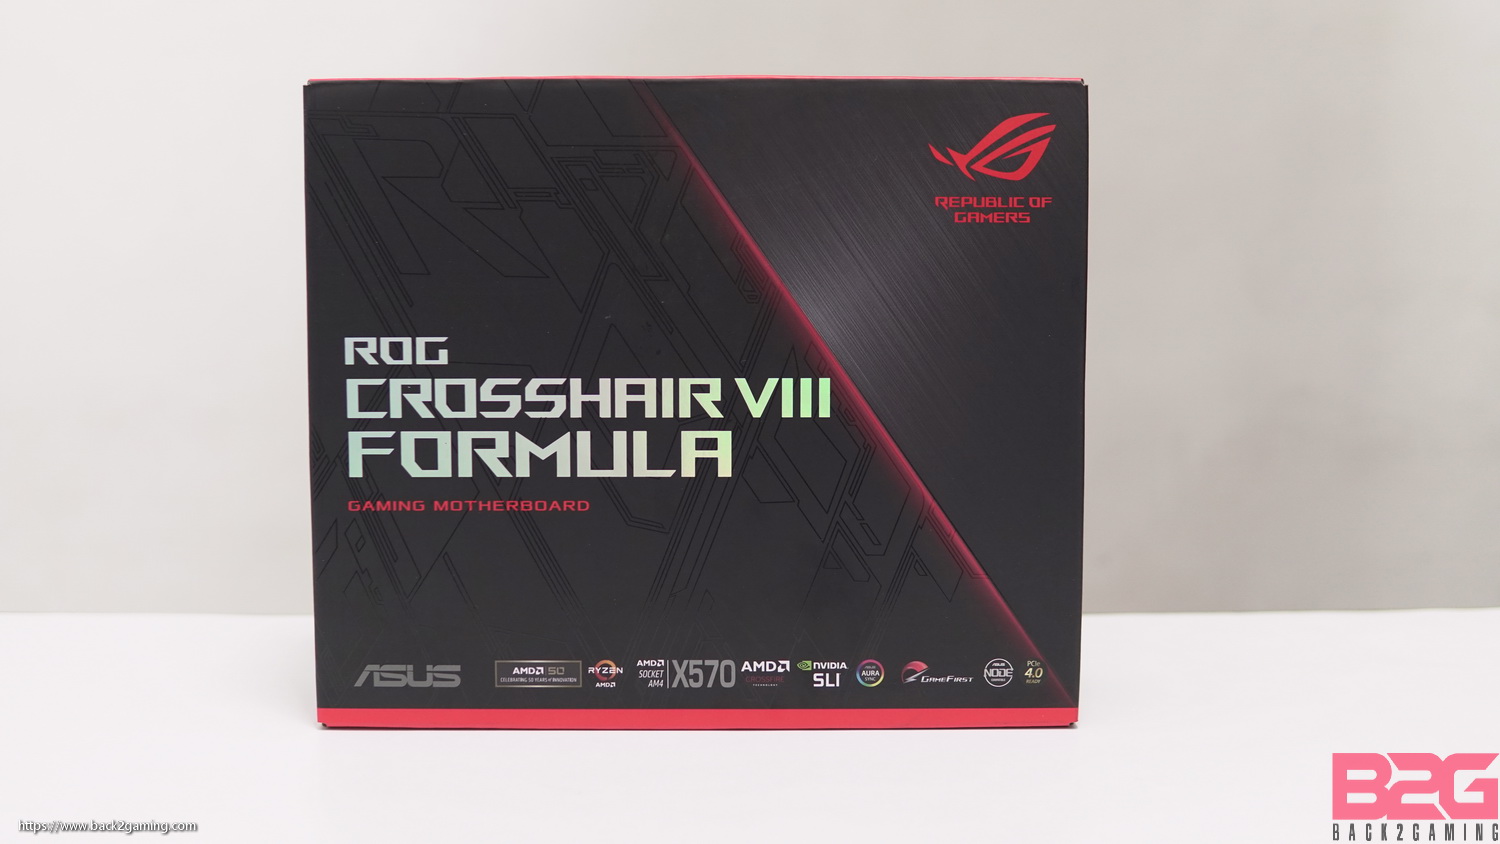 ASUS ROG Crosshair VIII Formula Motherboard Review - crosshair viii formula